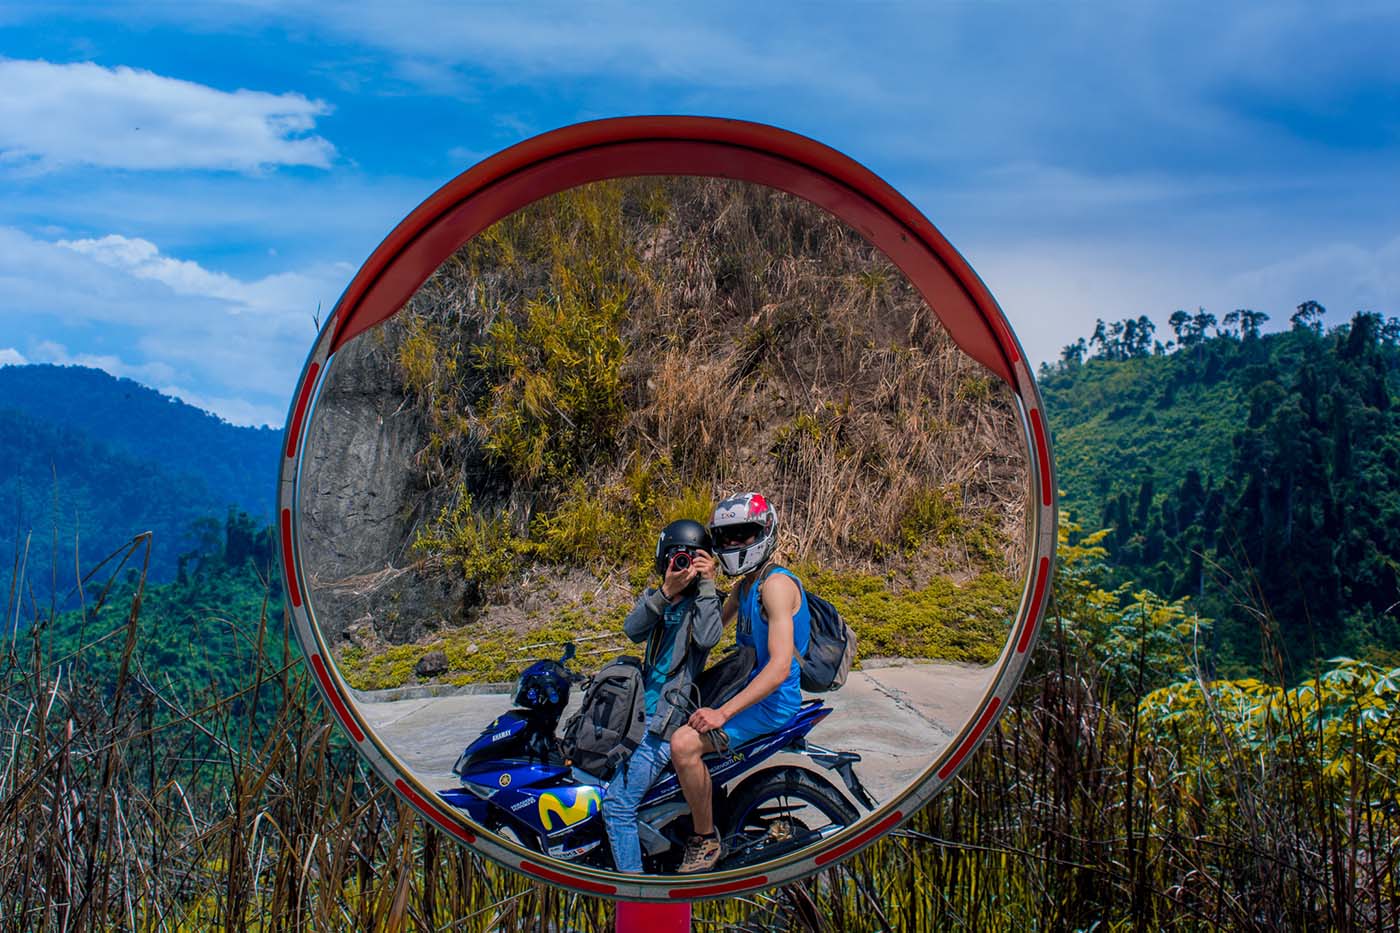 Motorbike to Da Nang - How to get to Da Nang